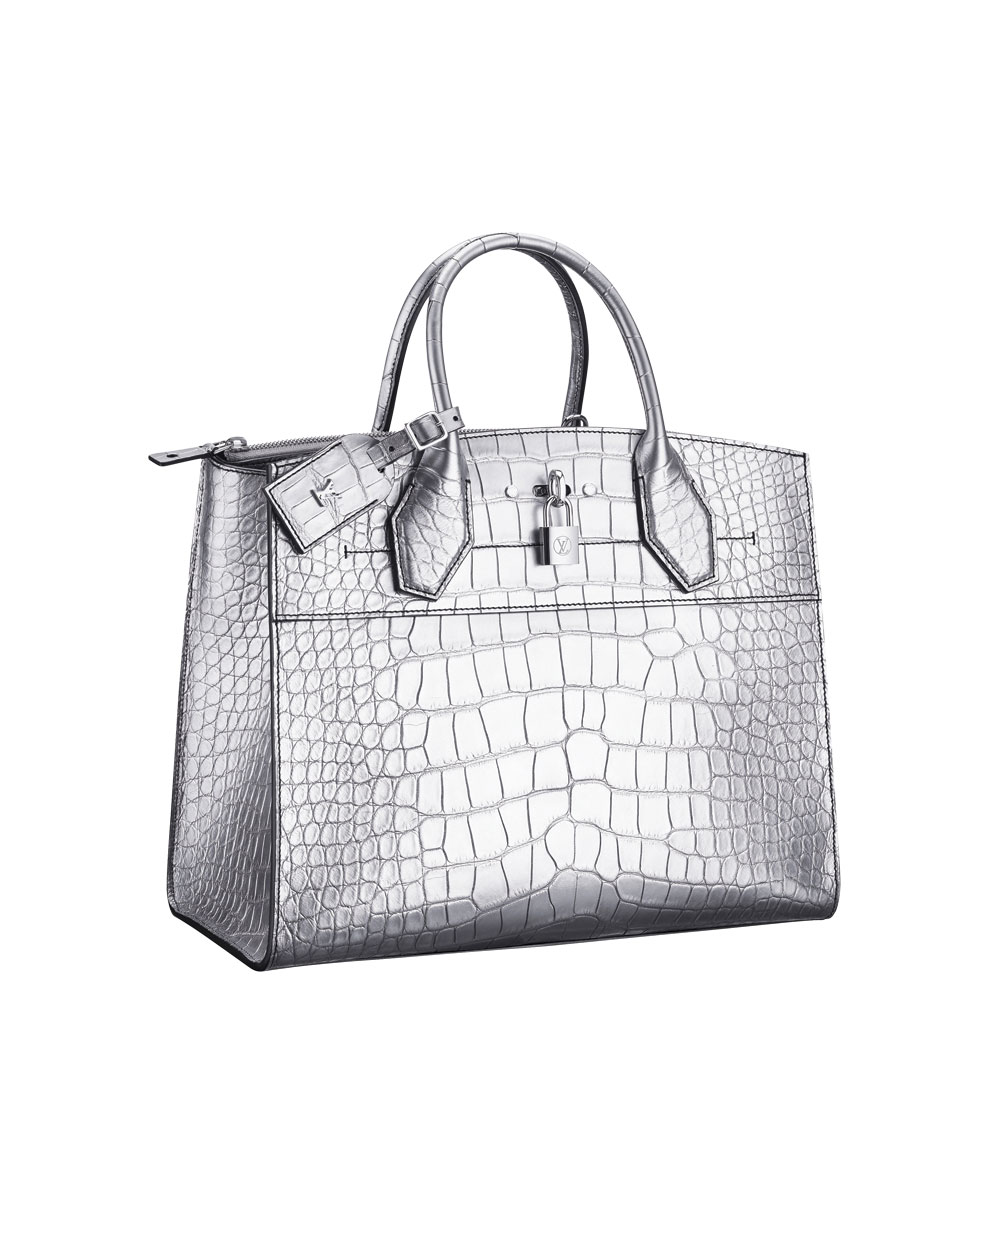 Louis Vuitton bag, $44,500. 